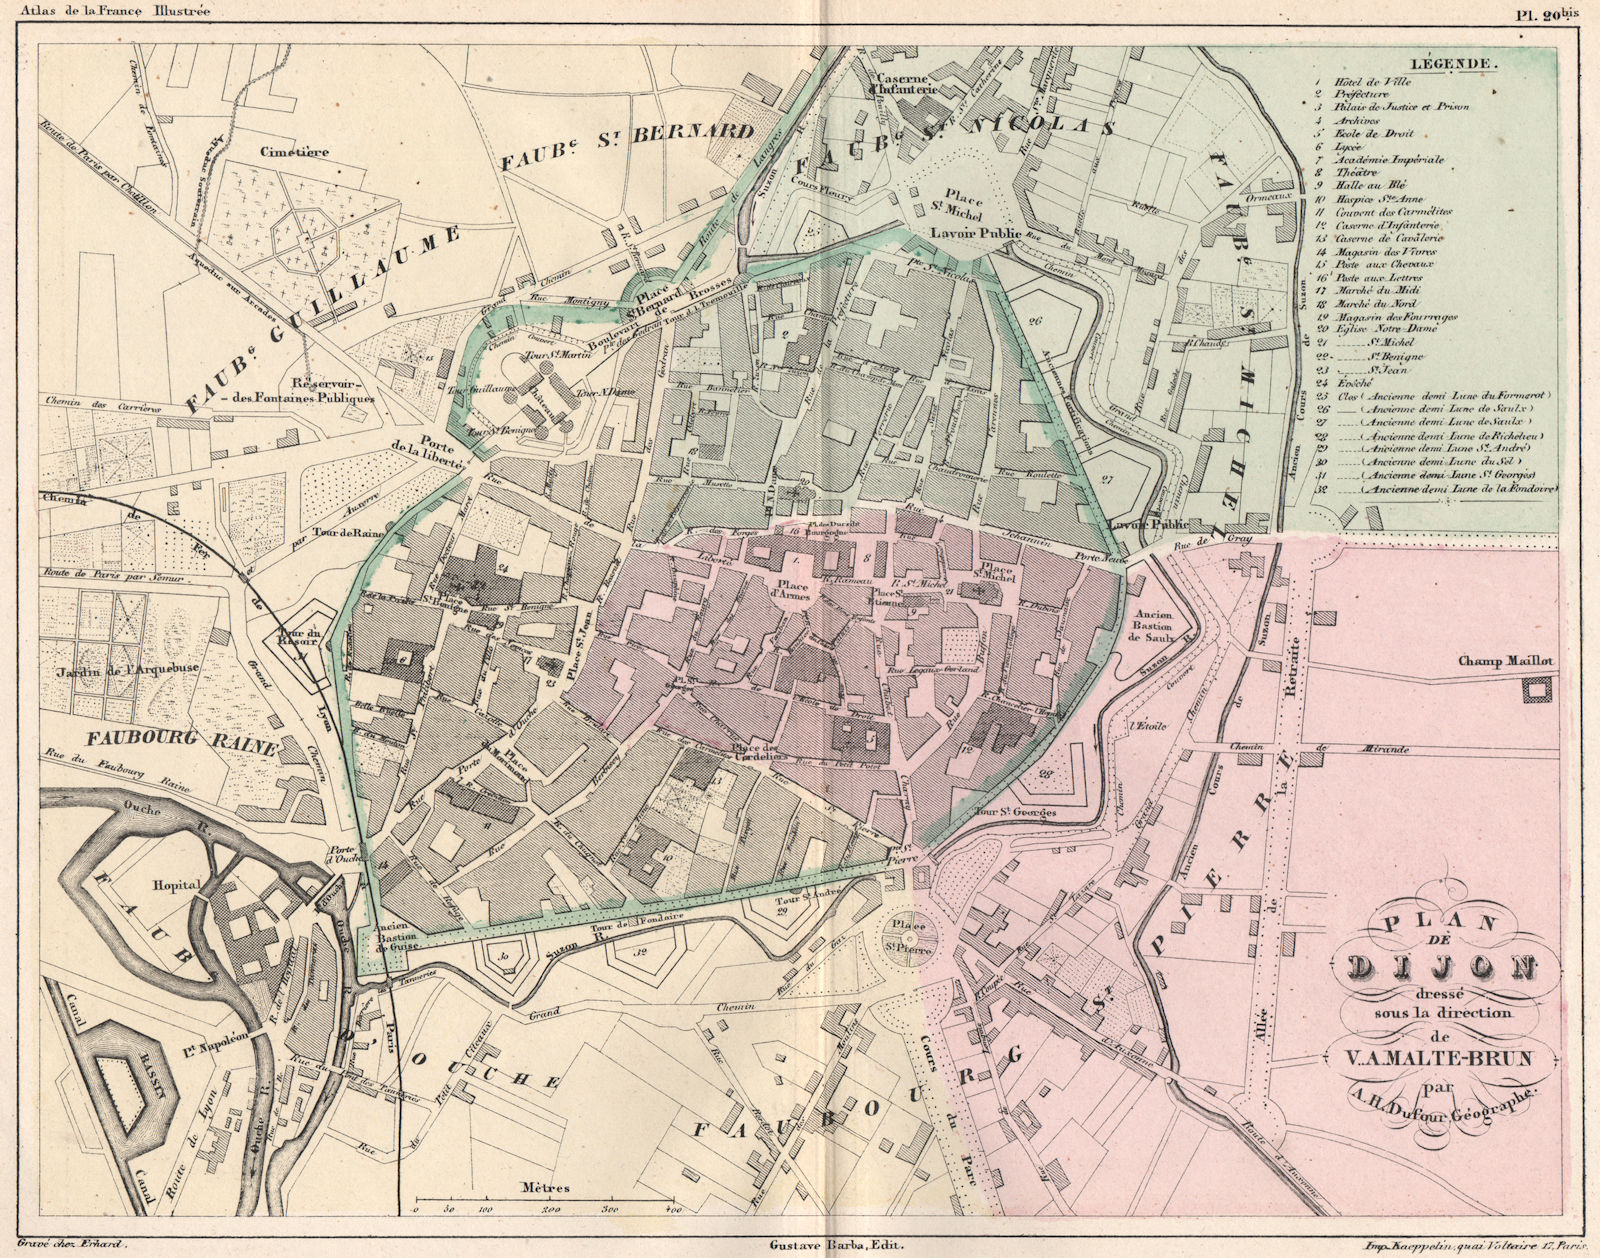 Associate Product DIJON. Antique town city plan. Cote Côte d'Or. MALTE-BRUN 1852 old map